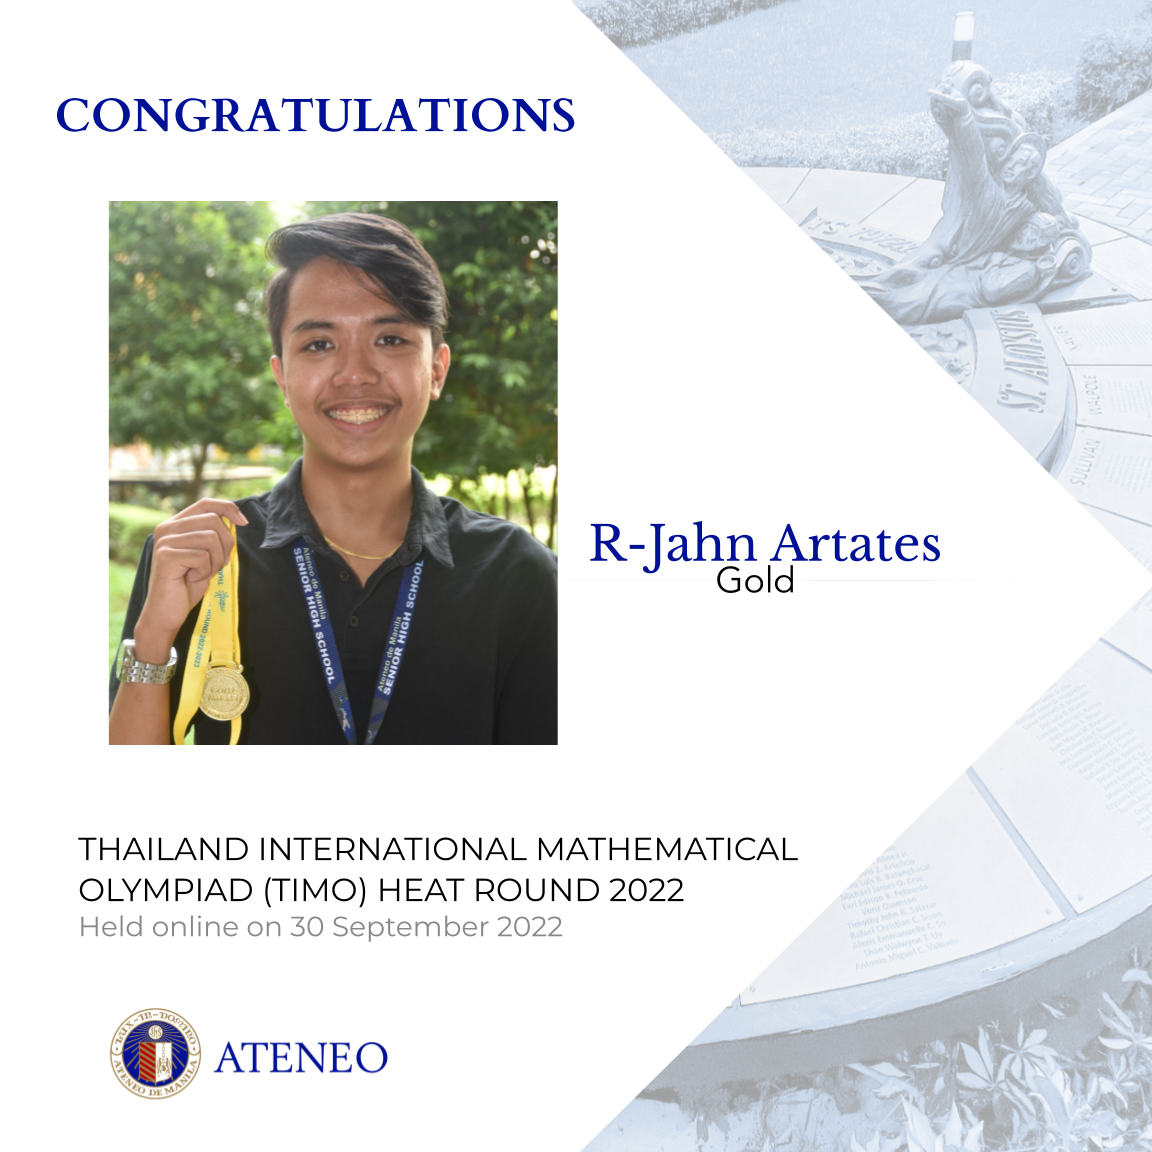 TIMO heat round gold medalist R-Jahn Artates  